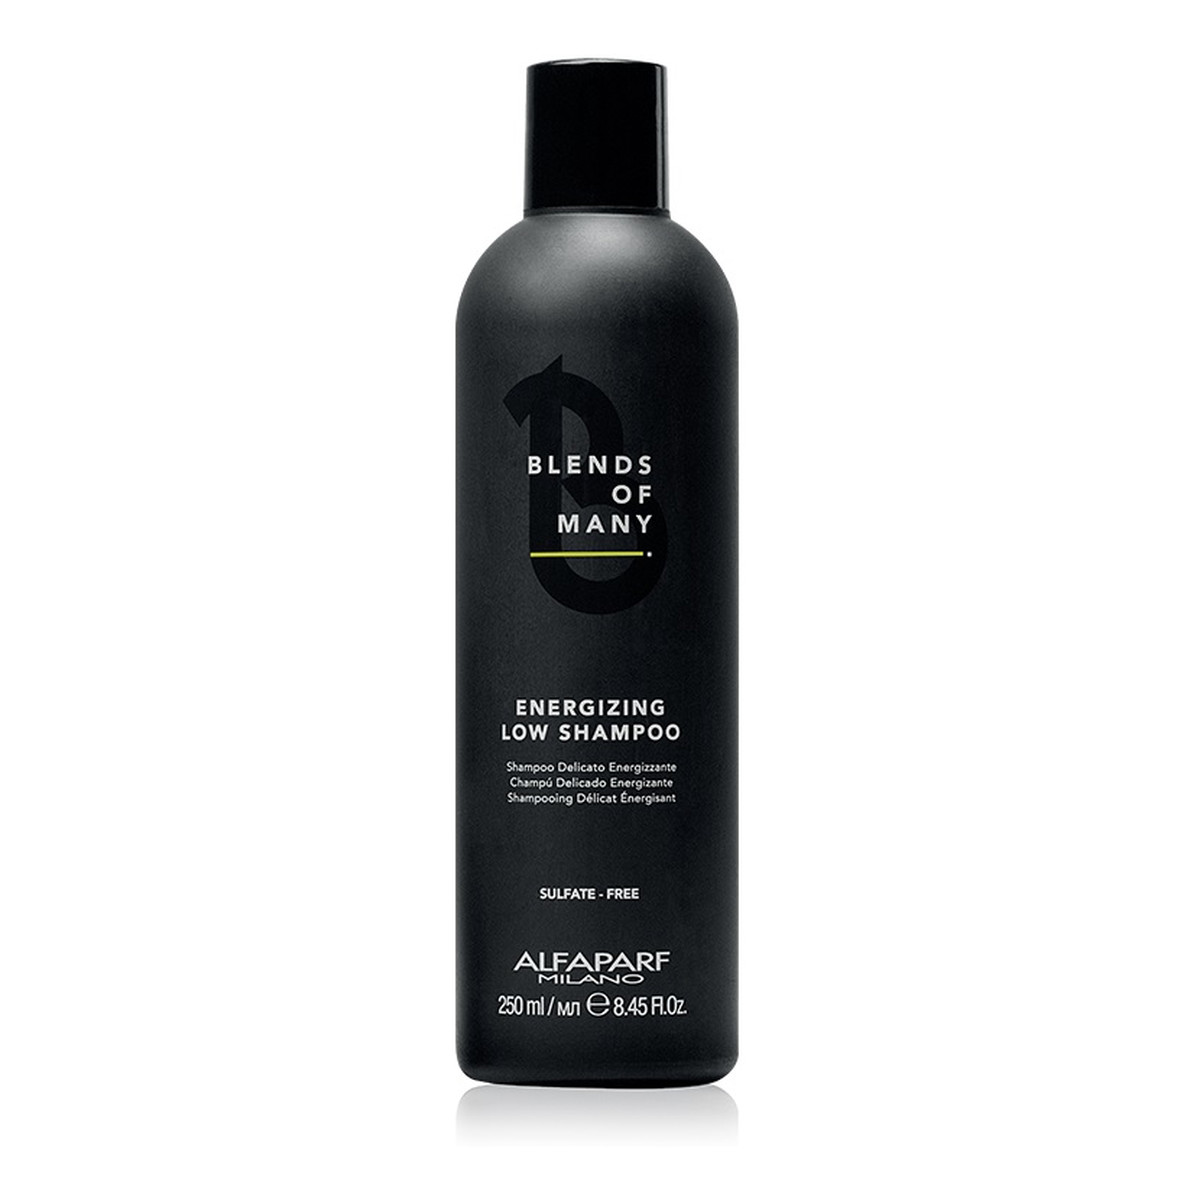 Alfaparf Blends Of Many Energizing Low Shampoo Szampon energetyzujący do włosów dla mężczyzn 250ml